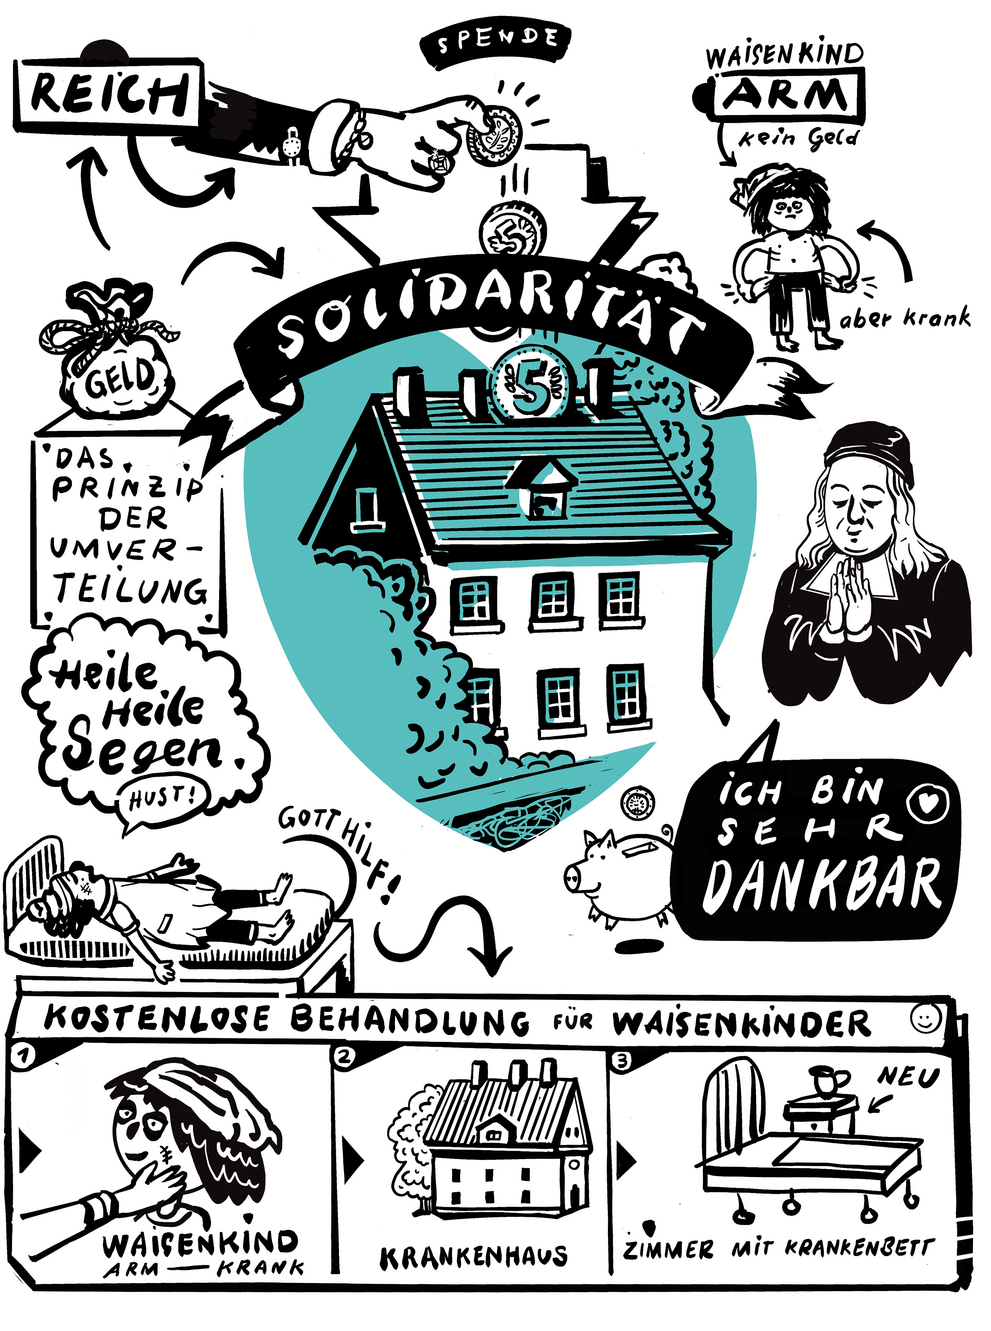 Der Comic erklärt das Solidaritätsprinzip: Die Reichen teilen mit den Armen